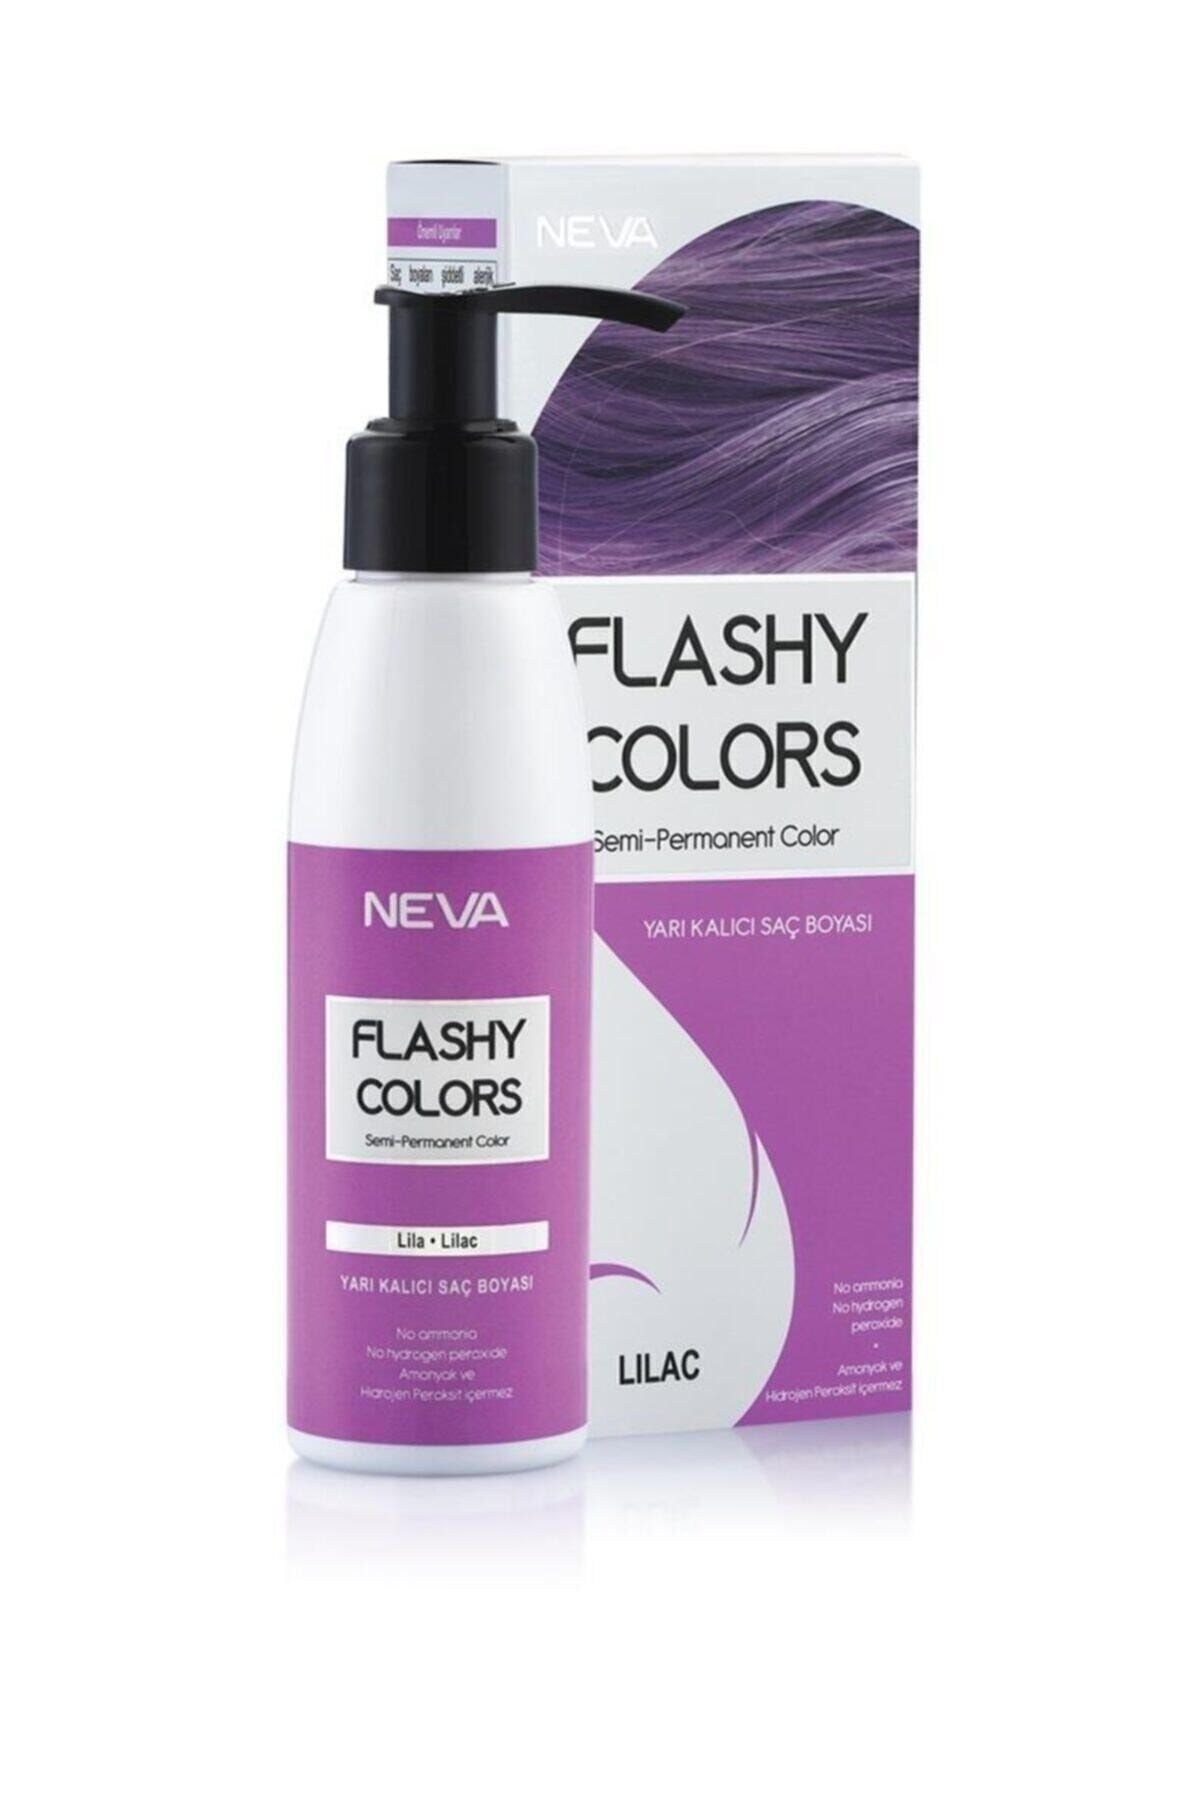 Flashy Colors Yarı Kalıcı Saç Boyası - Lila 100 ml